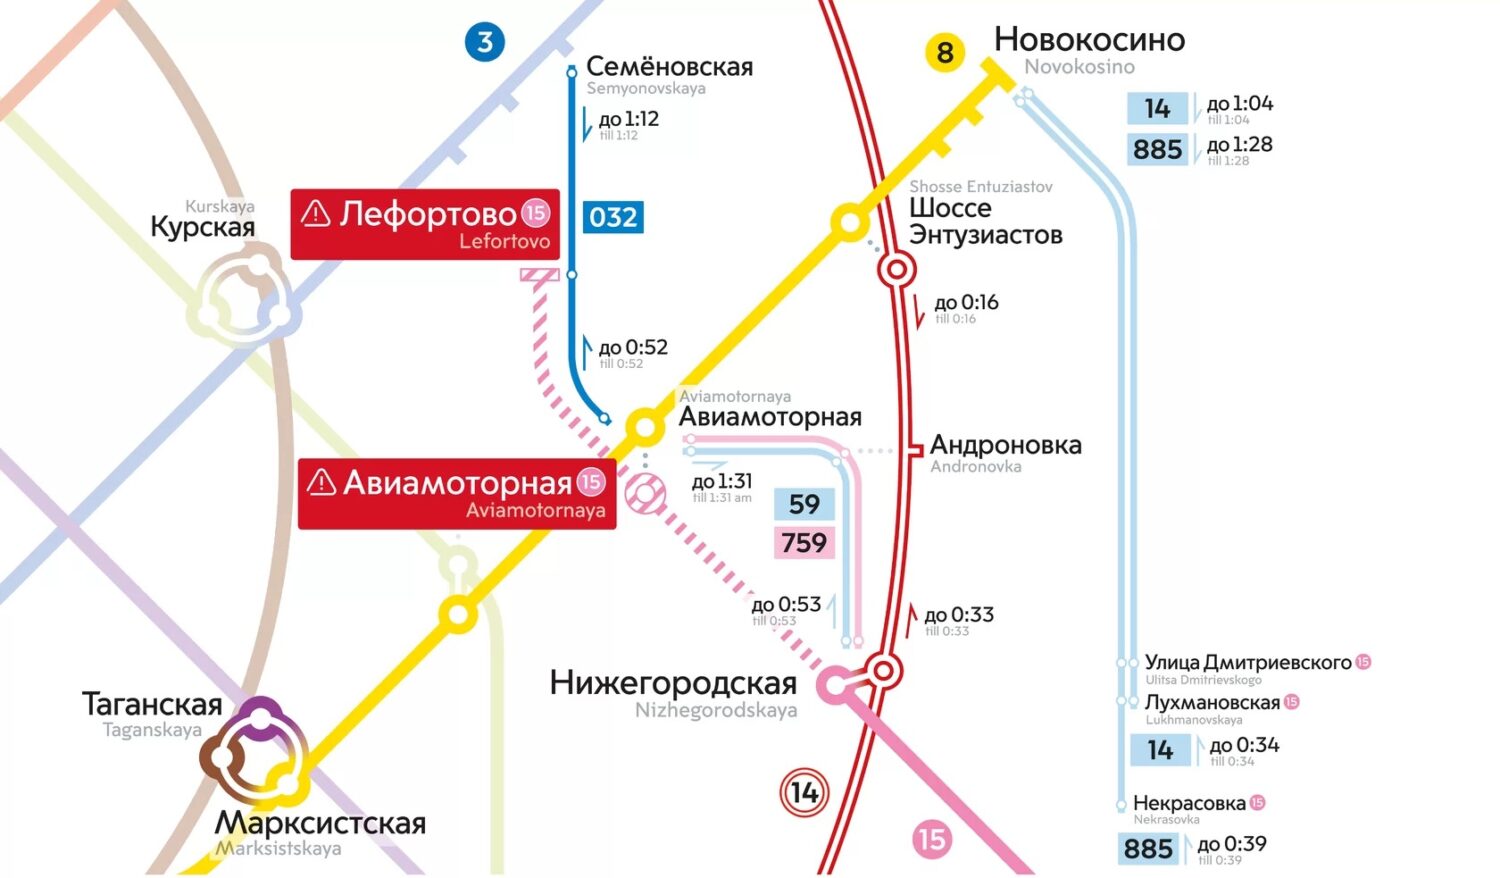 Две станции Некрасовской линии в выходные до конца августа будут закрываться раньше